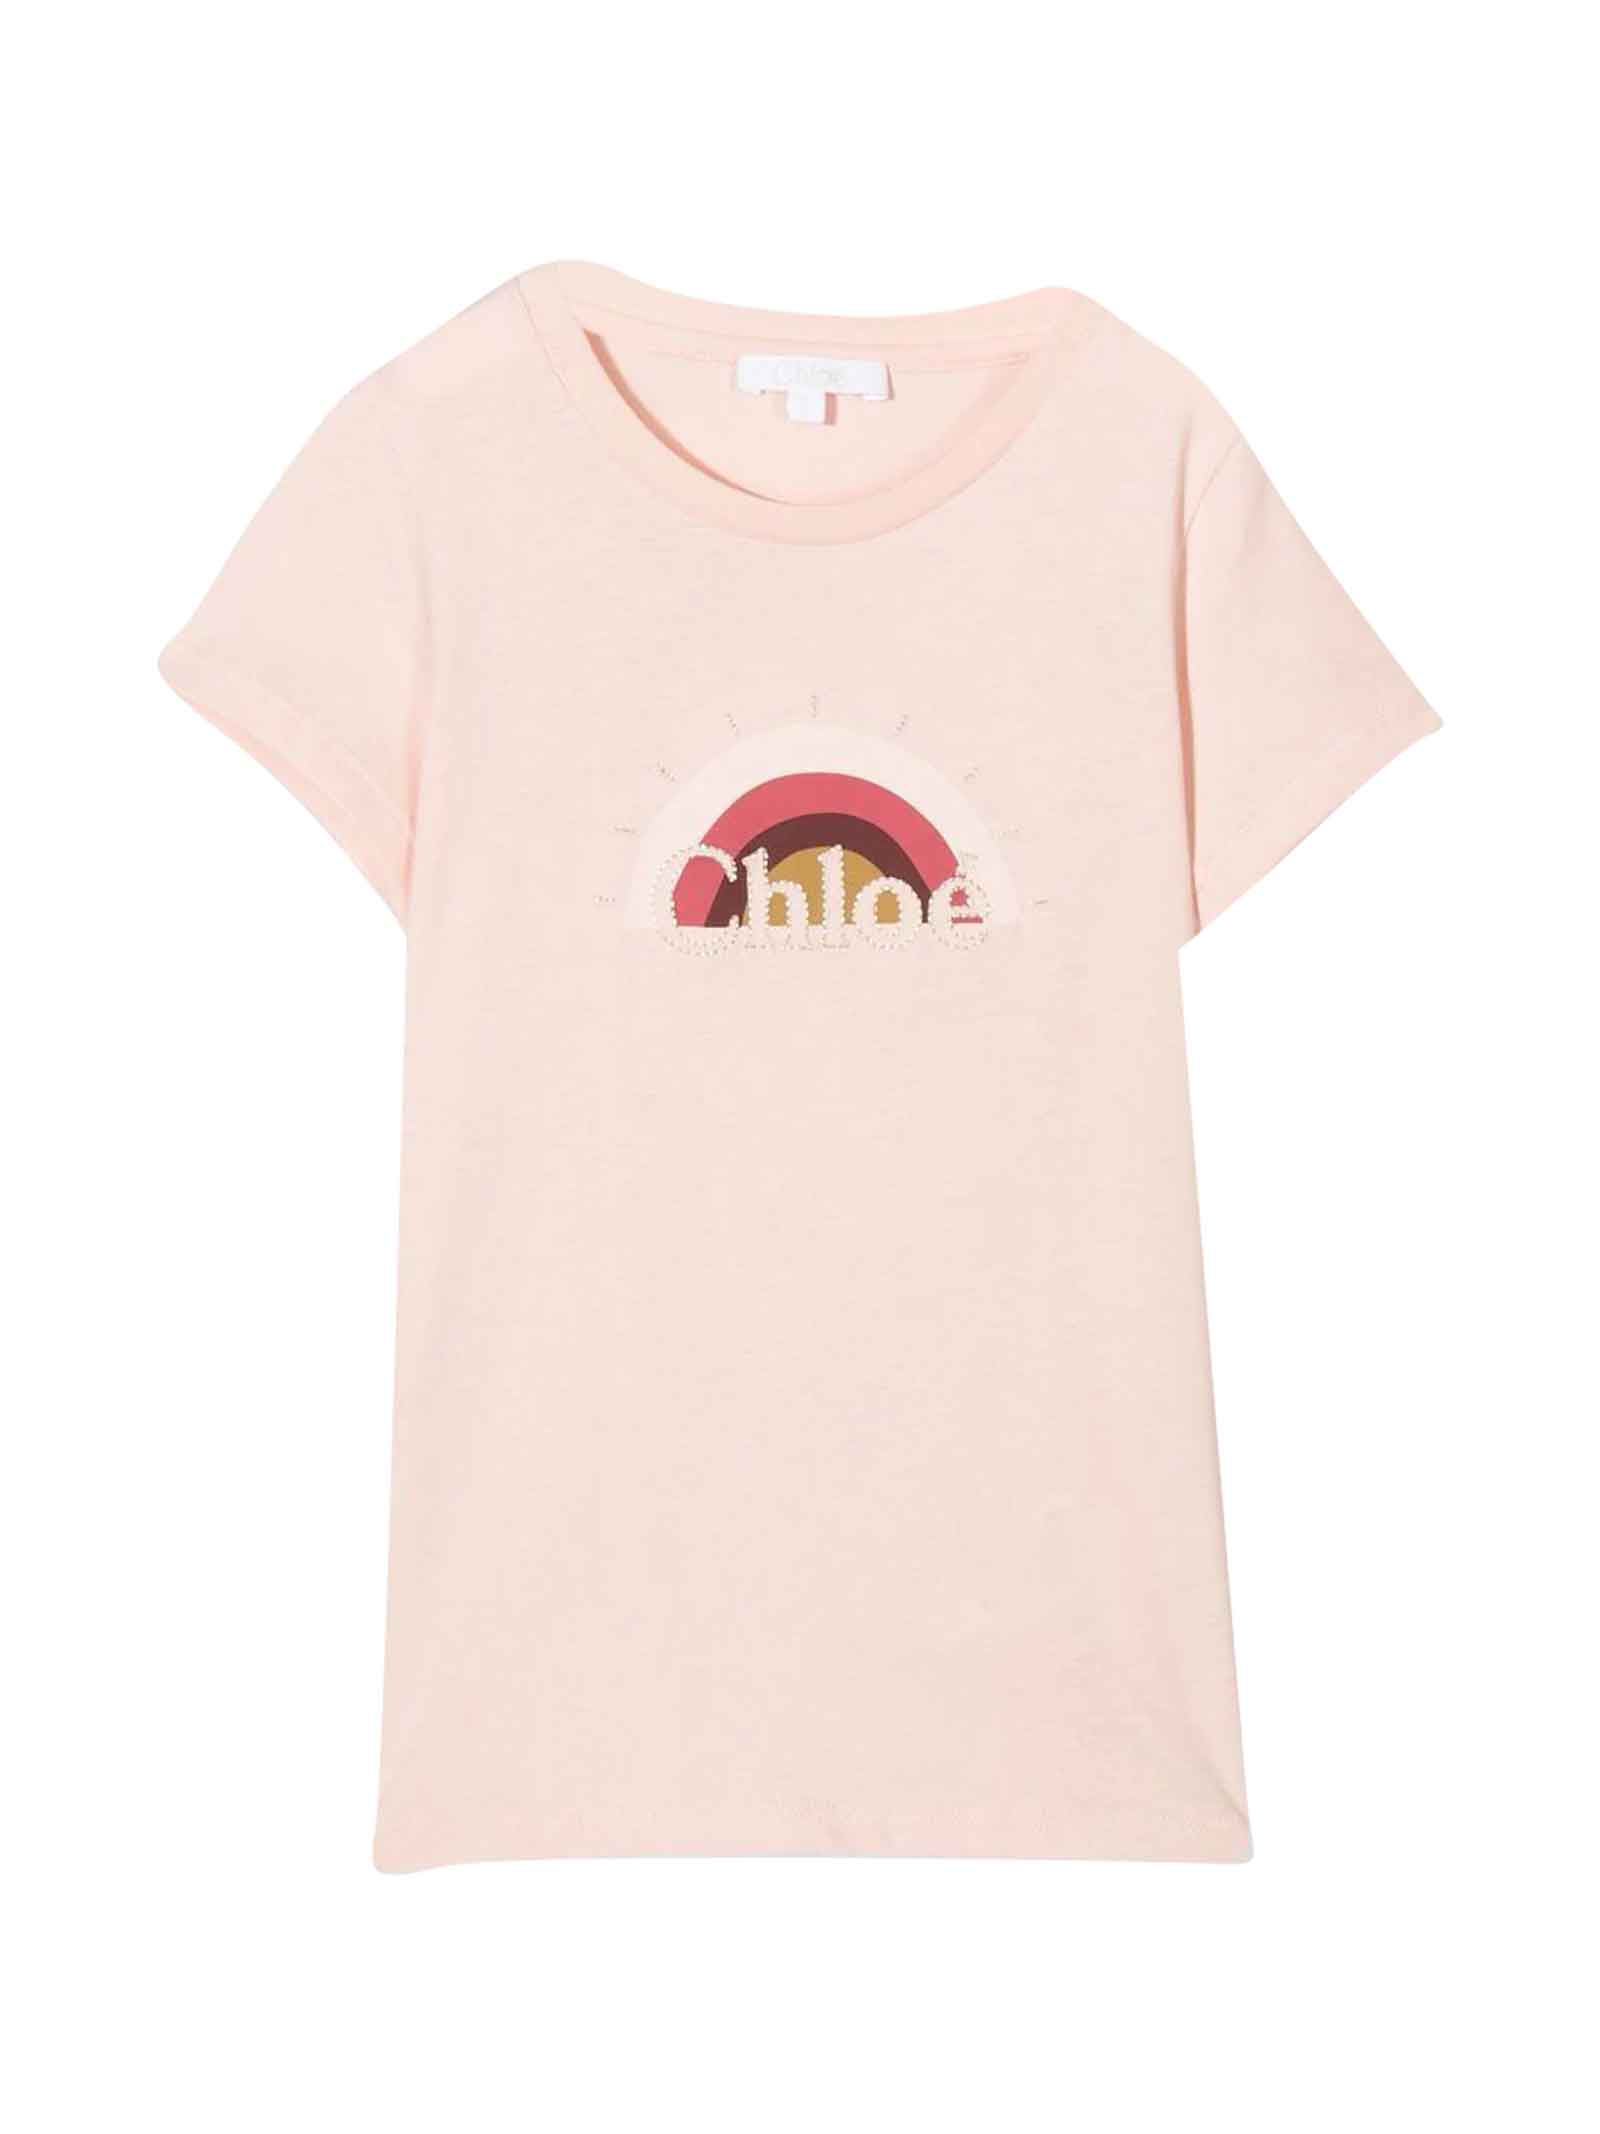 Pink T-shirt Girl Chloé Kids